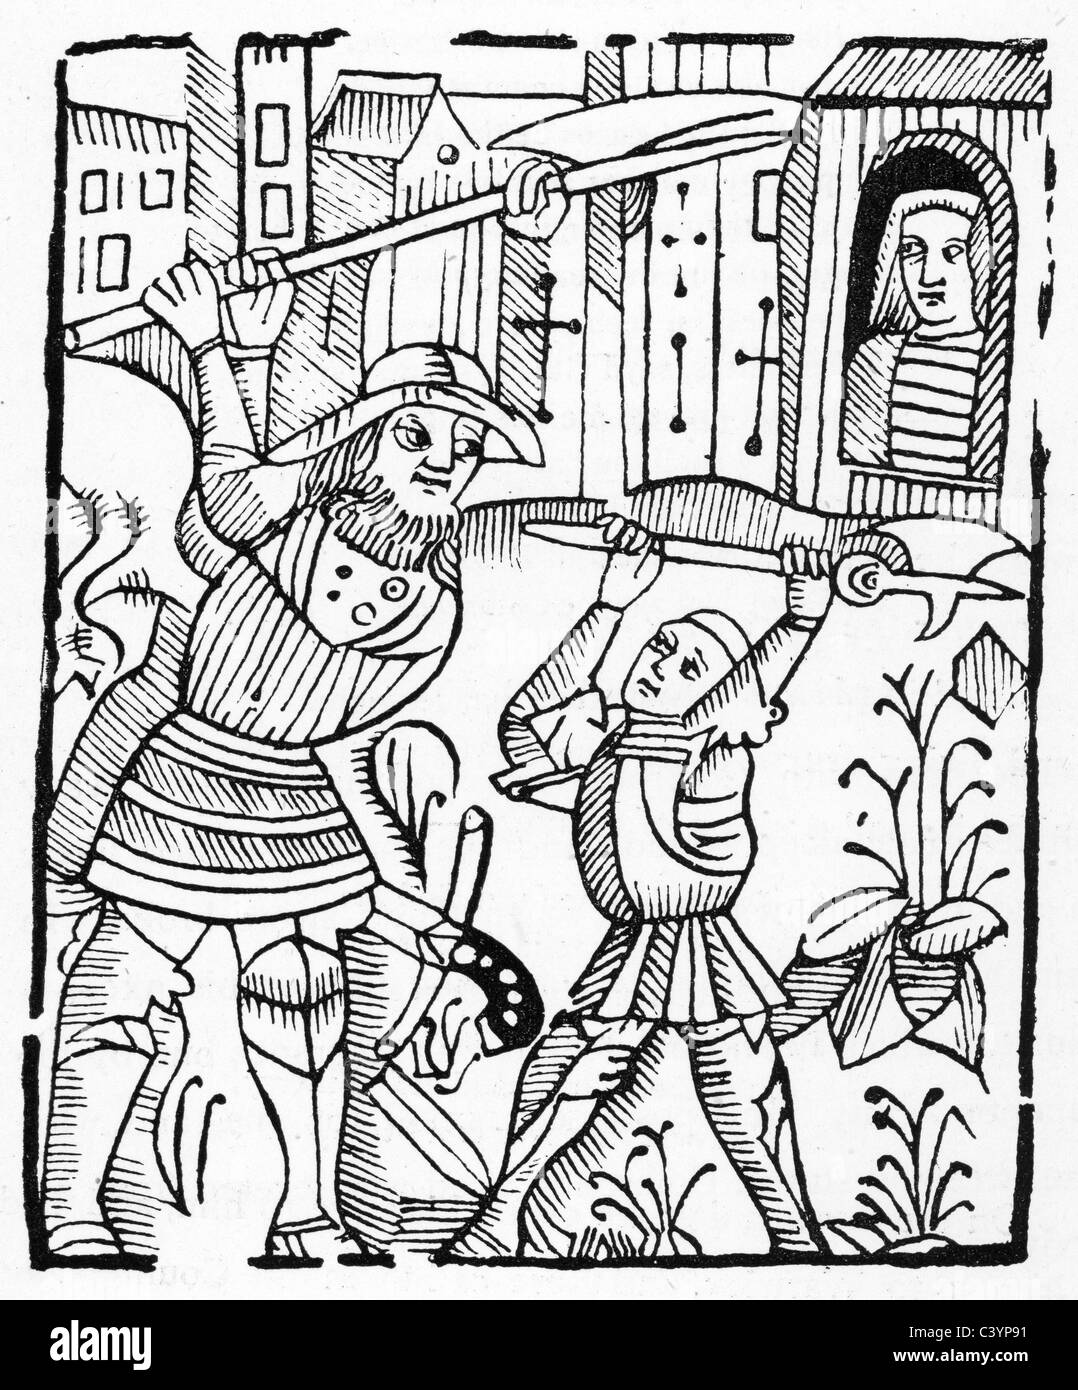 Guy of Warwick kämpfen die riesigen Colbrond. Guy of Warwick ist eine legendäre englische Held der Romantik aus dem 13. Jahrhundert. Stockfoto